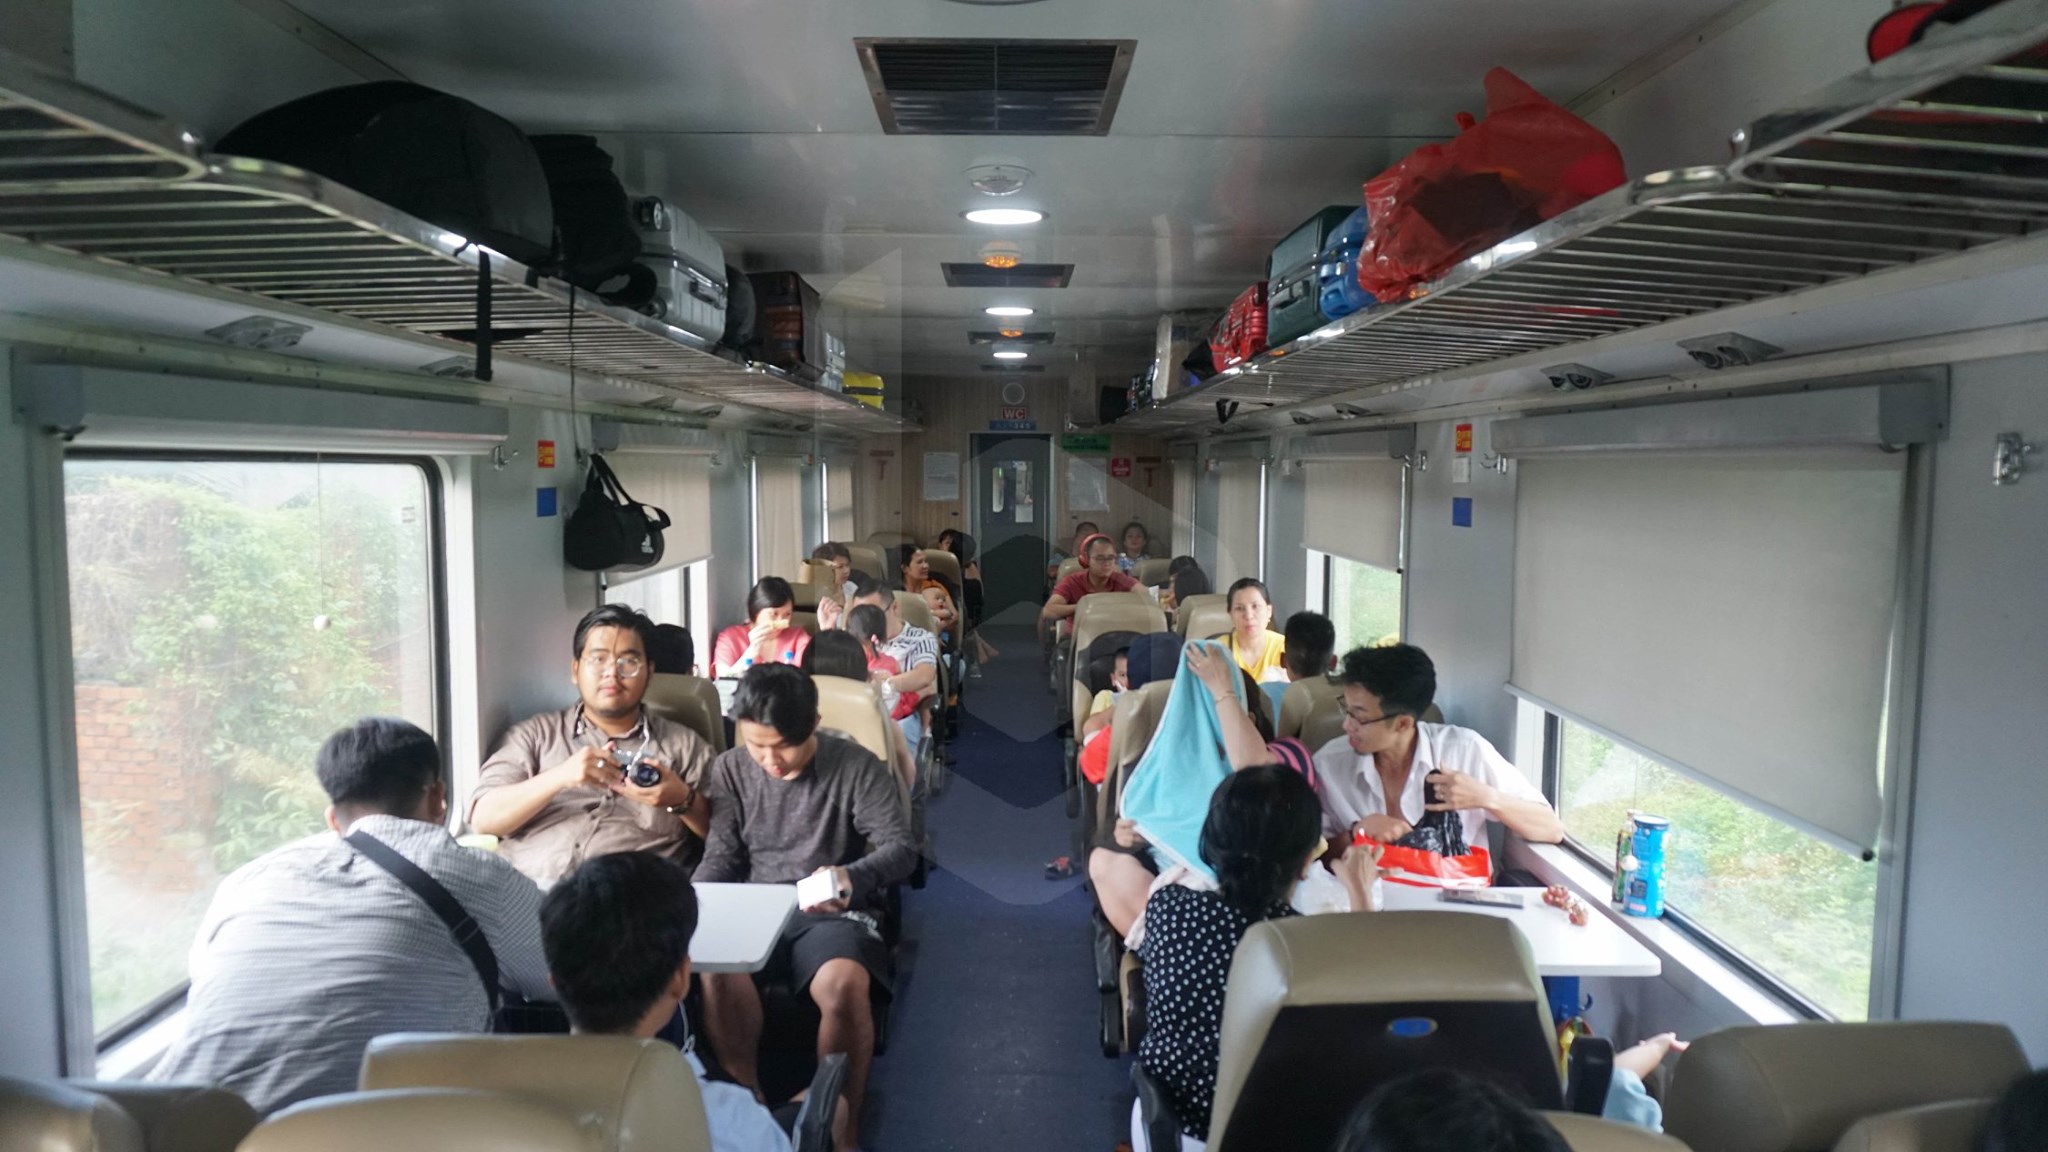 Saigon to Phan Thiet by train